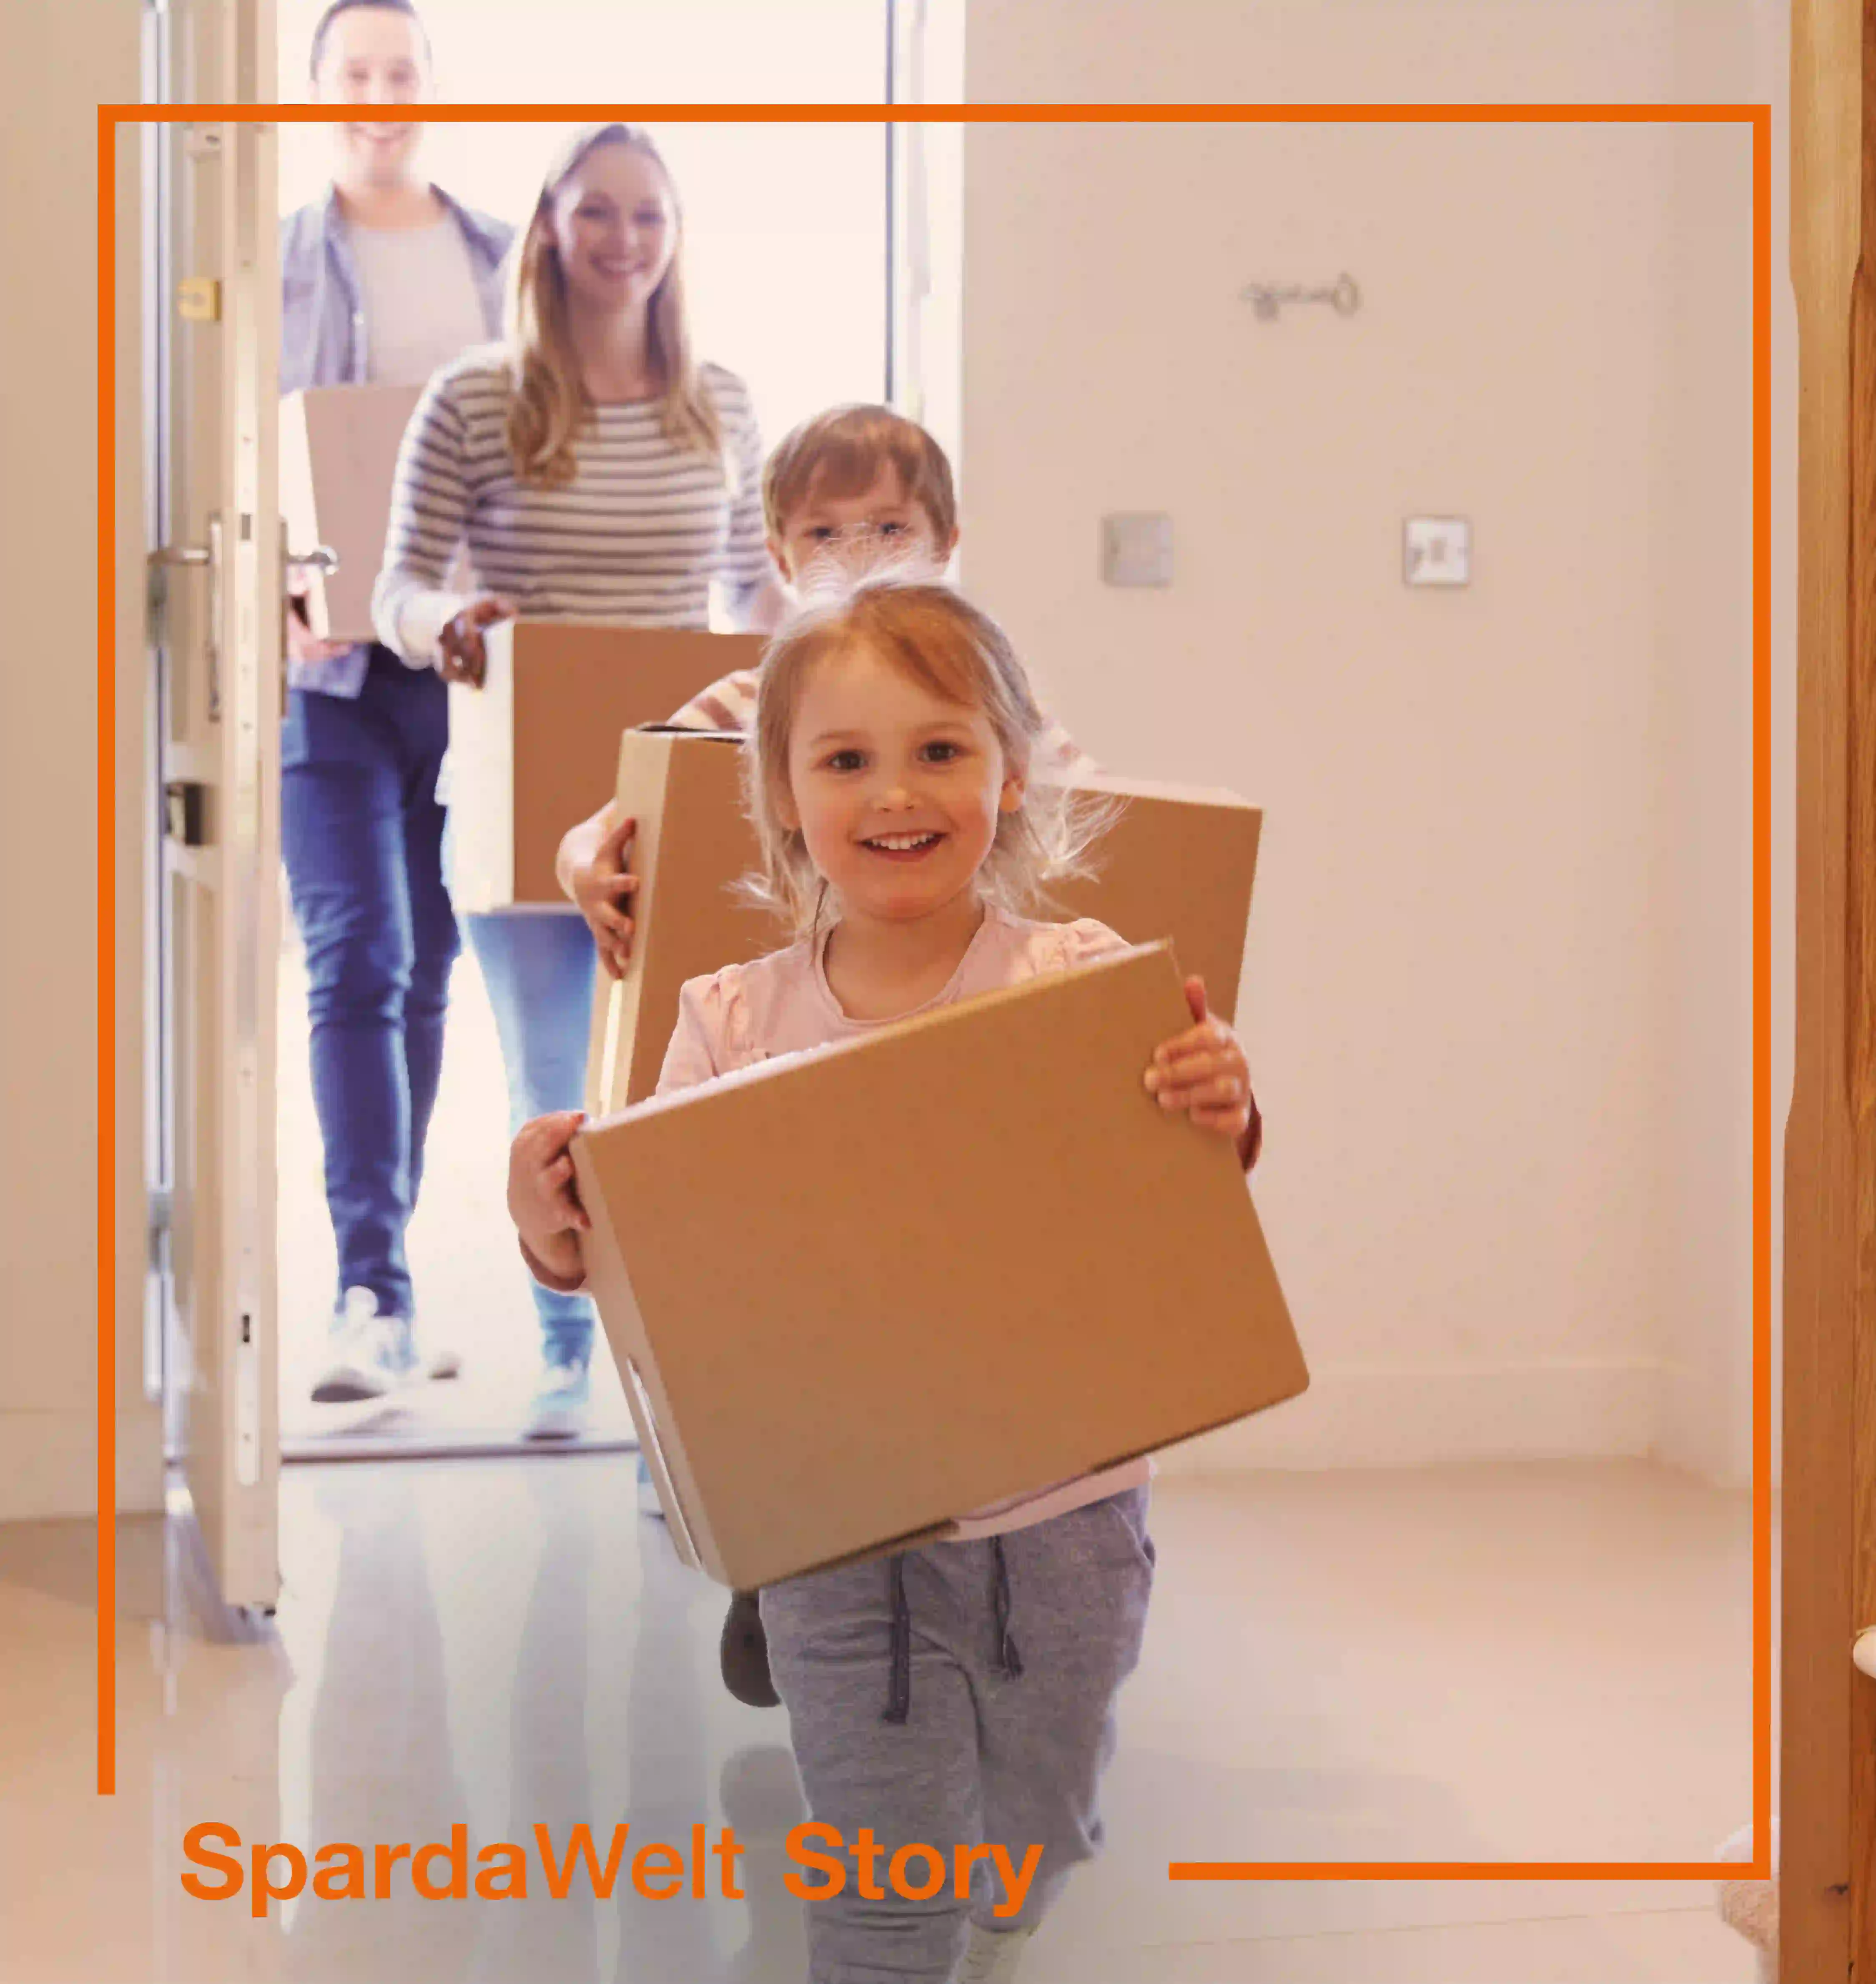 Eine vierköpfige Familie läuft mit Umzugskartons zu einer Haustüre hinein. Um das Bild herum ist ein orangener Rahmen. Der Schriftzug "SpardaWelt Story" weißt darauf hin, dass es sich um eine Empfehlung zu einer anderen SpardaWelt Story handelt.